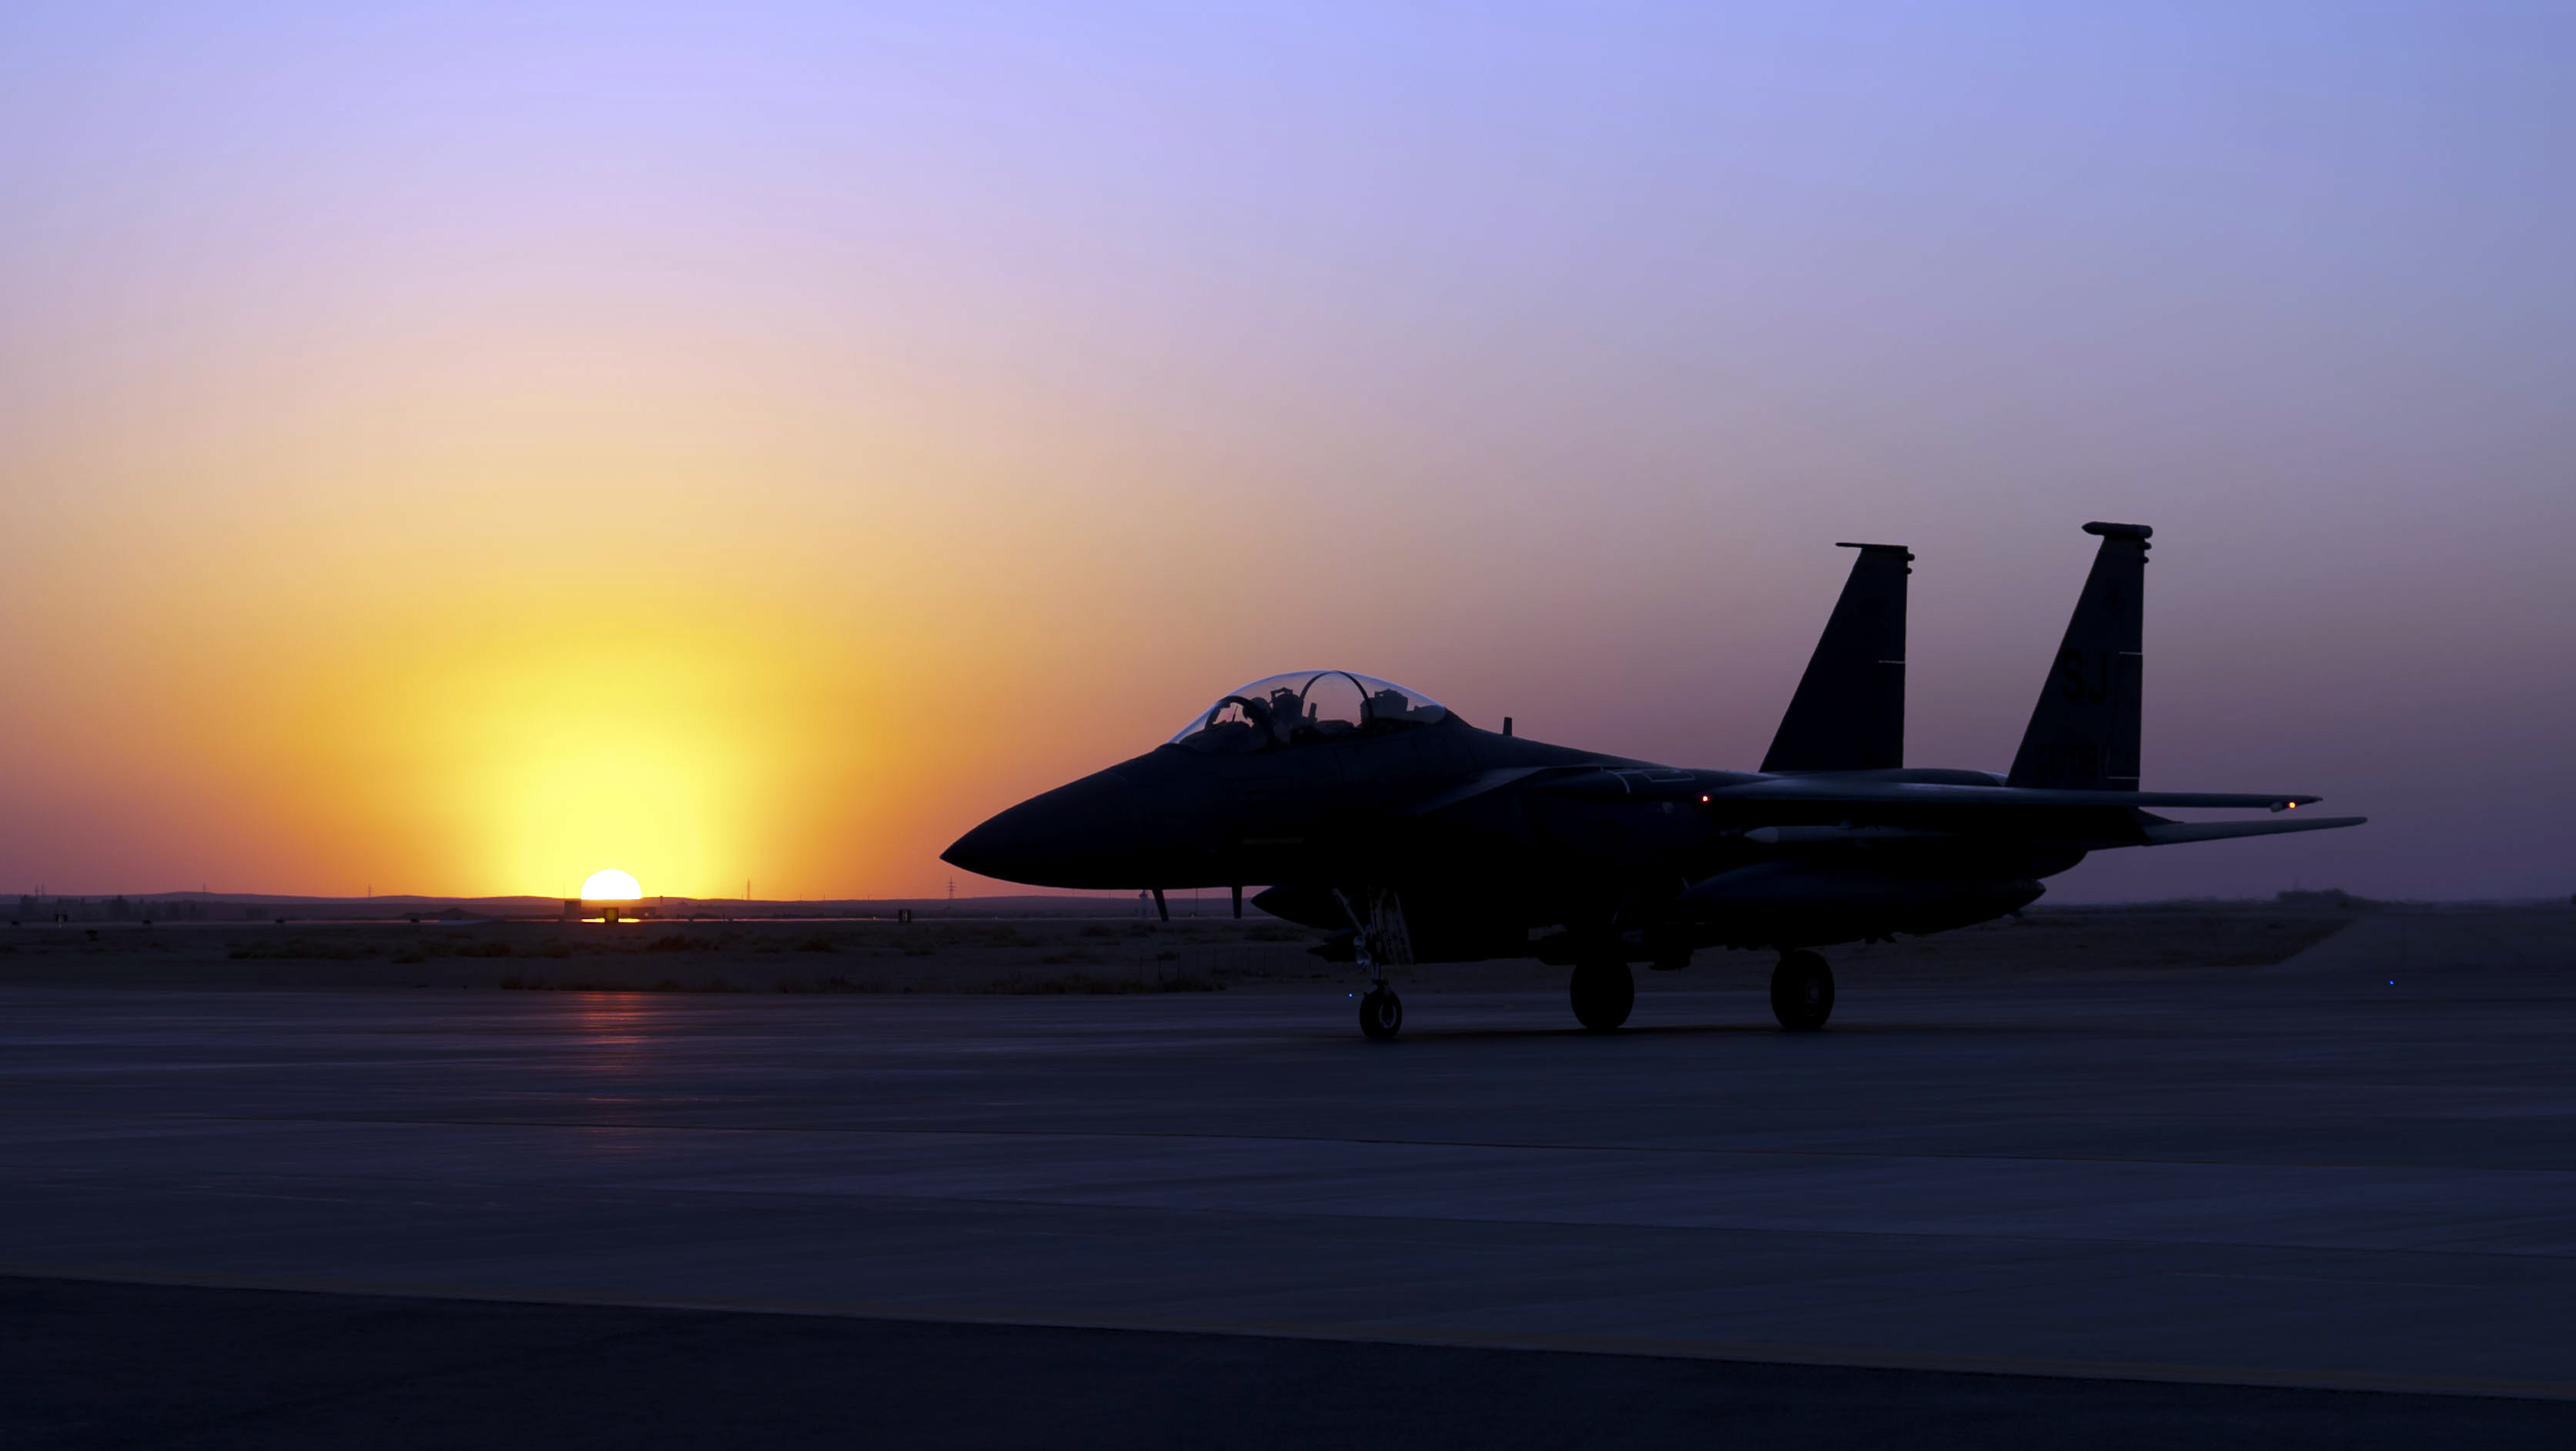 Eagle sunset over Southwest Asia